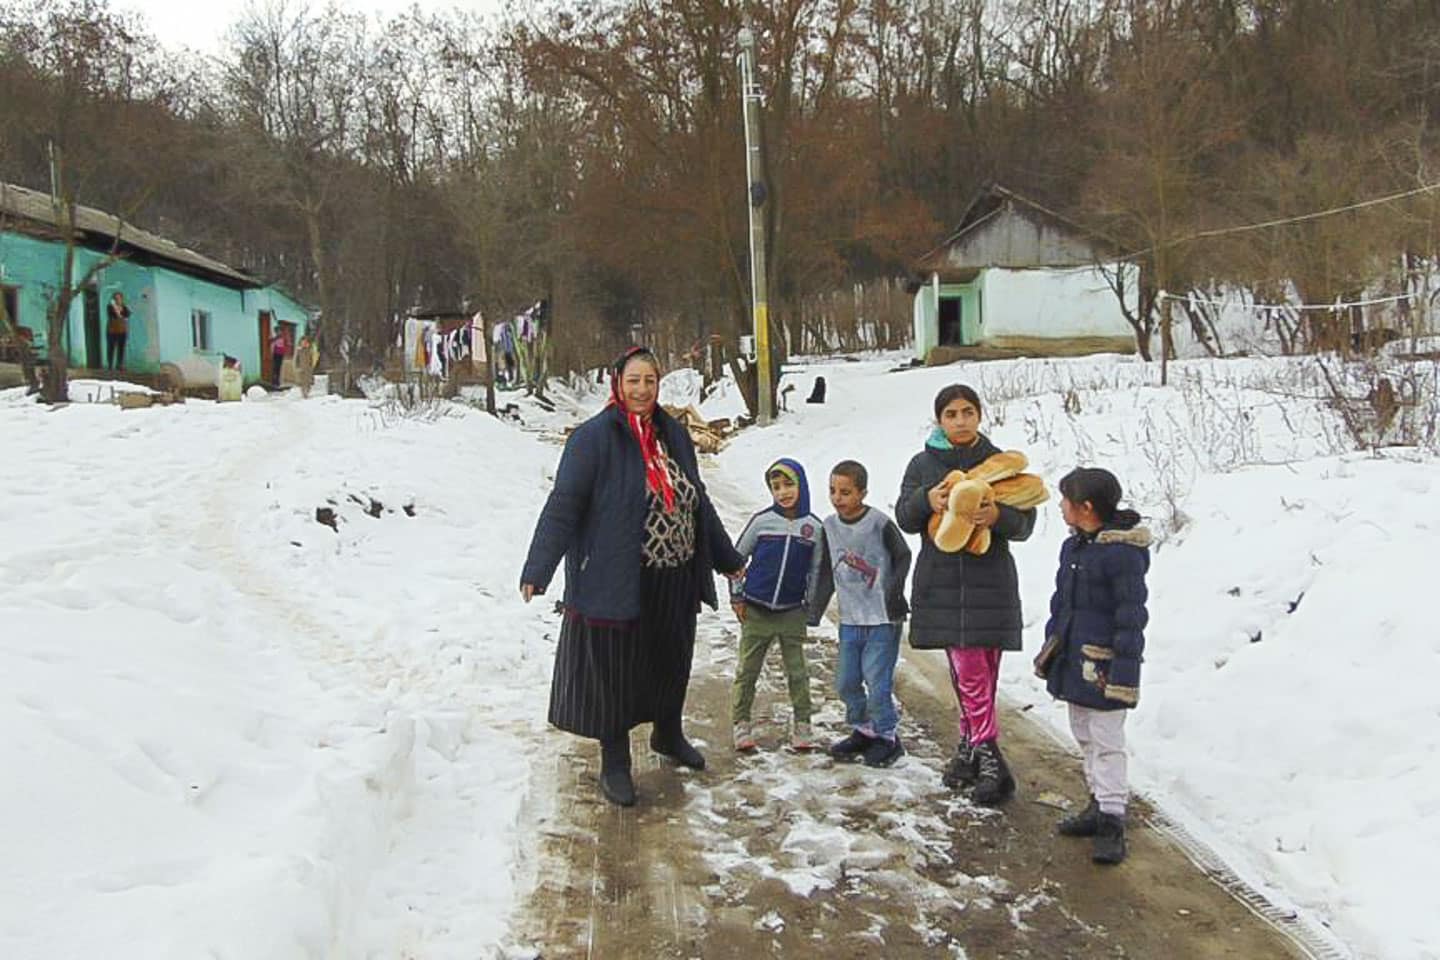 barn i valea seaca rumänien med mormor